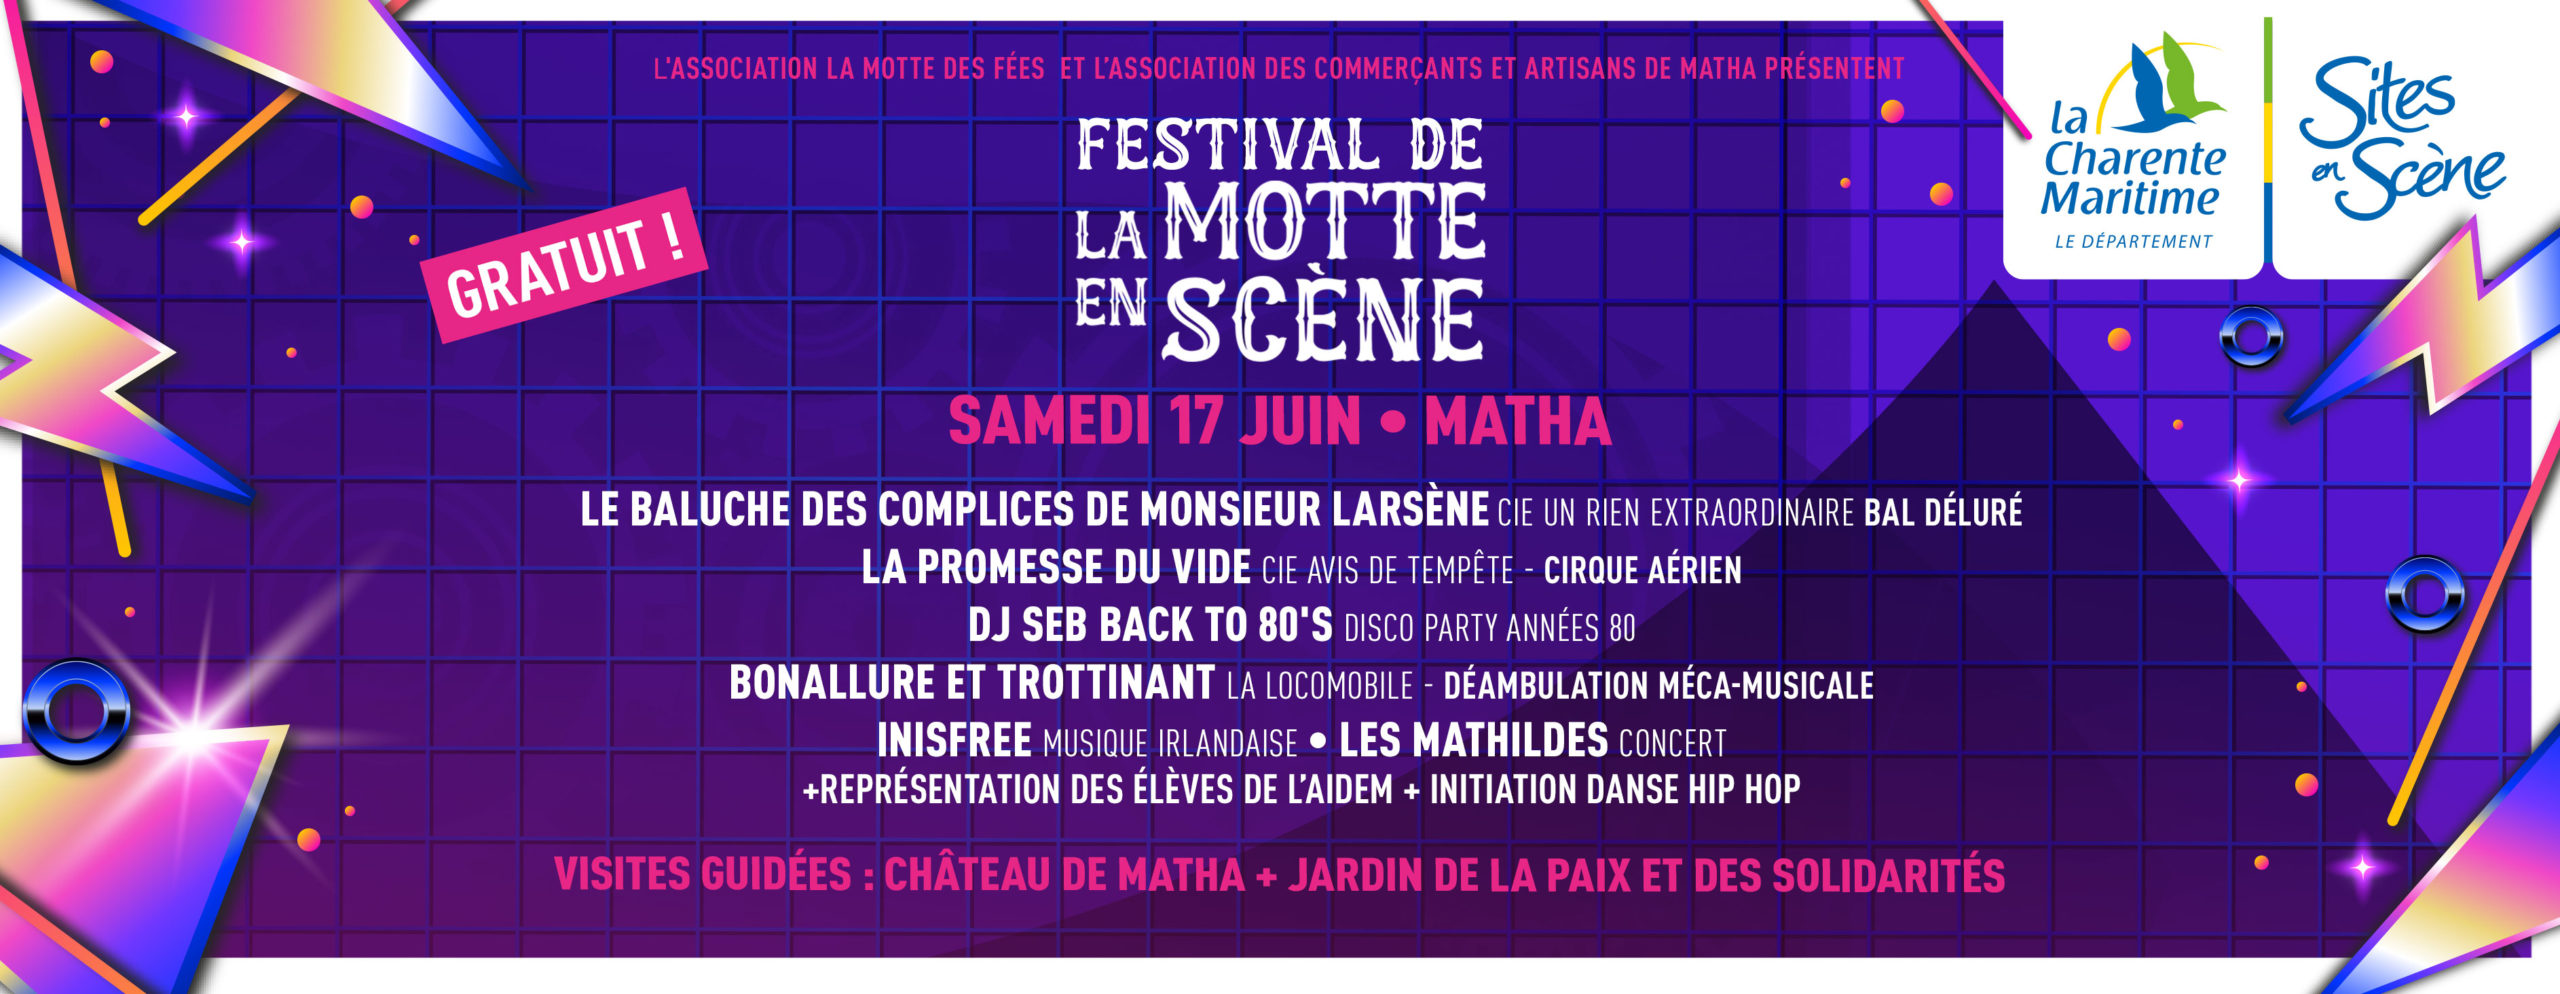 Festival de la Motte eb Scène